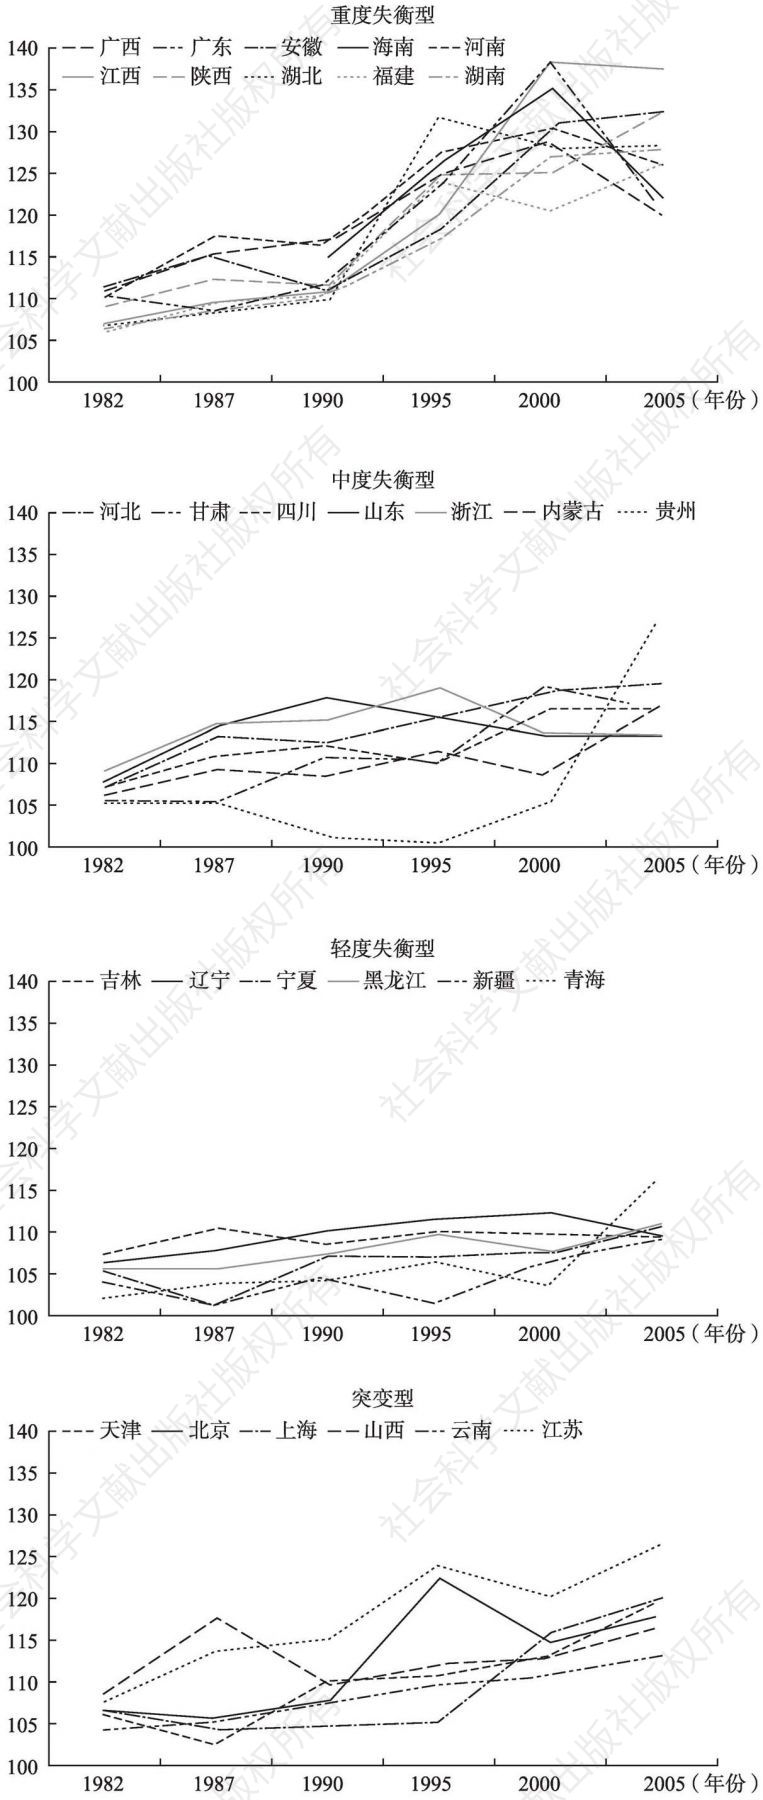 图4-3 不同类型地区的出生人口性别比变动